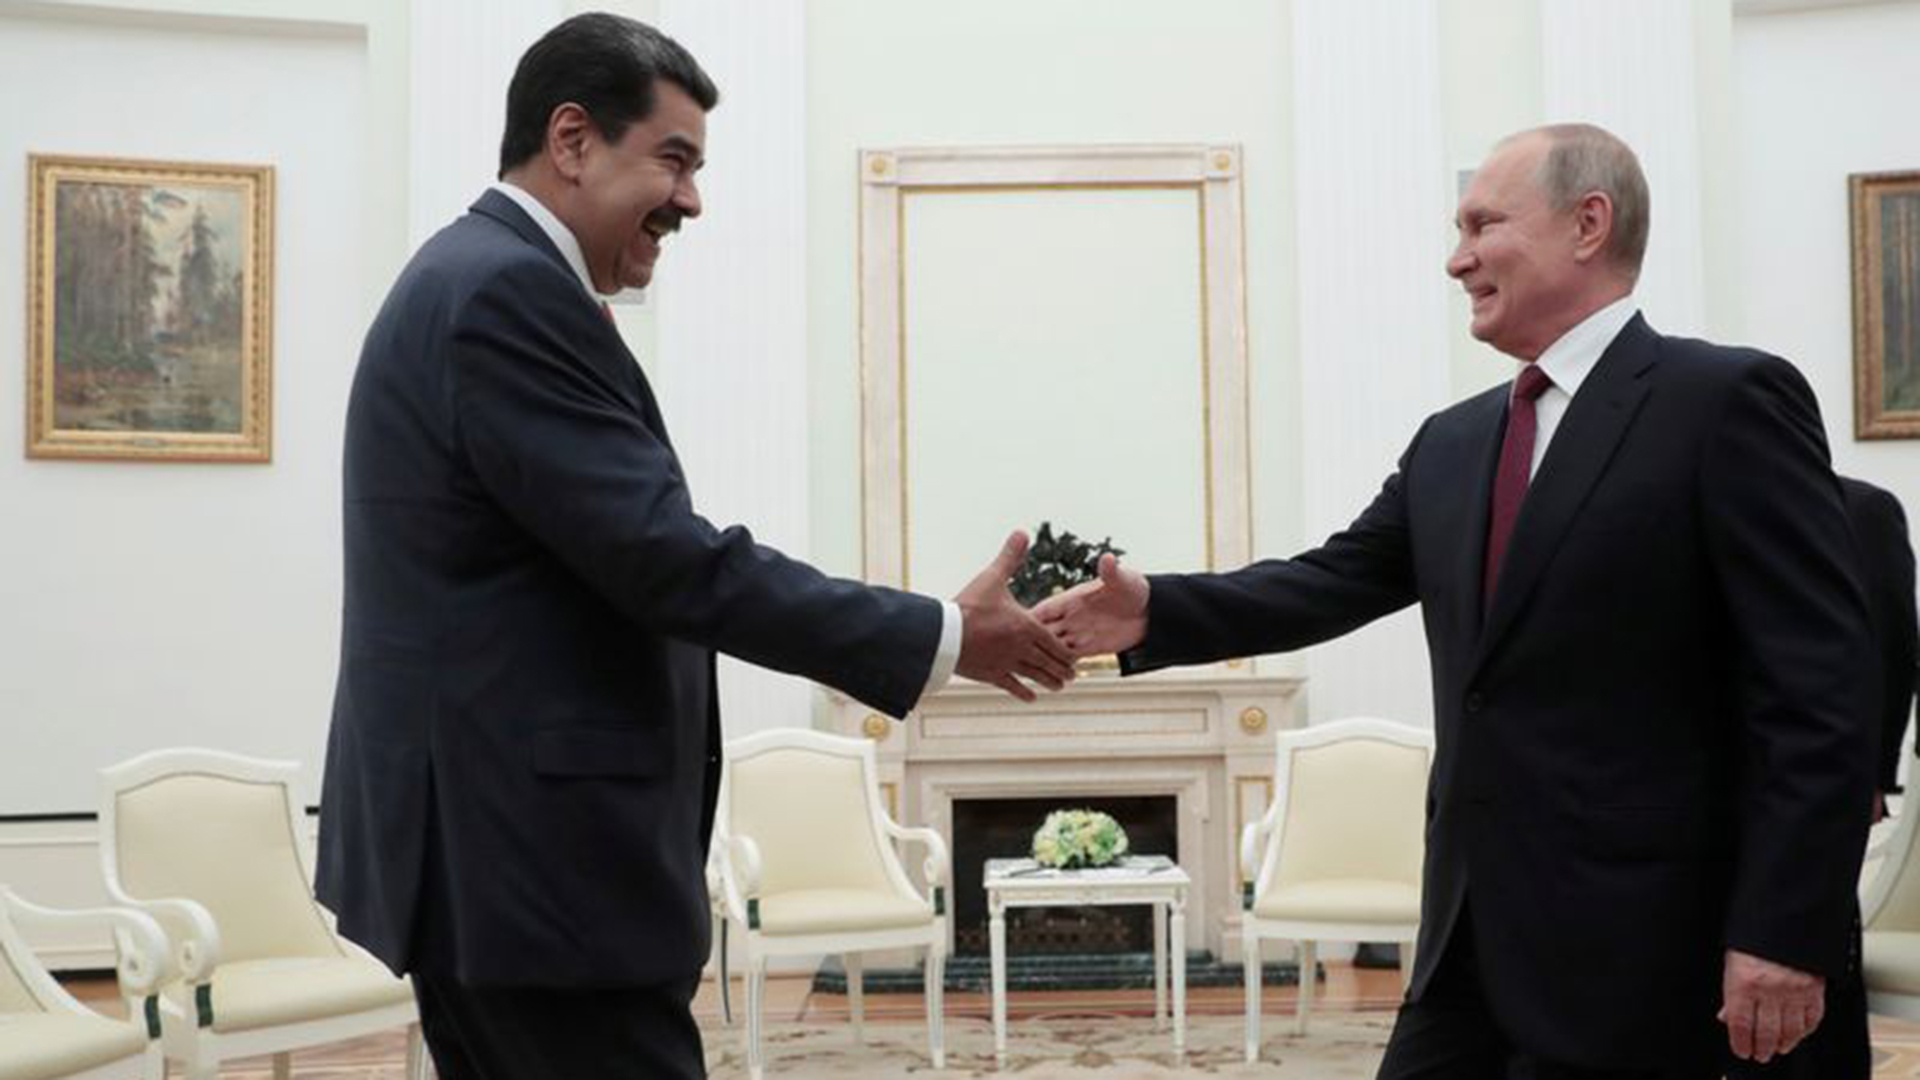 El presidente ruso Vladimir Putin le da la mano a Nicolás Maduro durante una reunión en el Kremlin el 25 de septiembre de 2019. Sergei Chirikov/Pool vía REUTERS